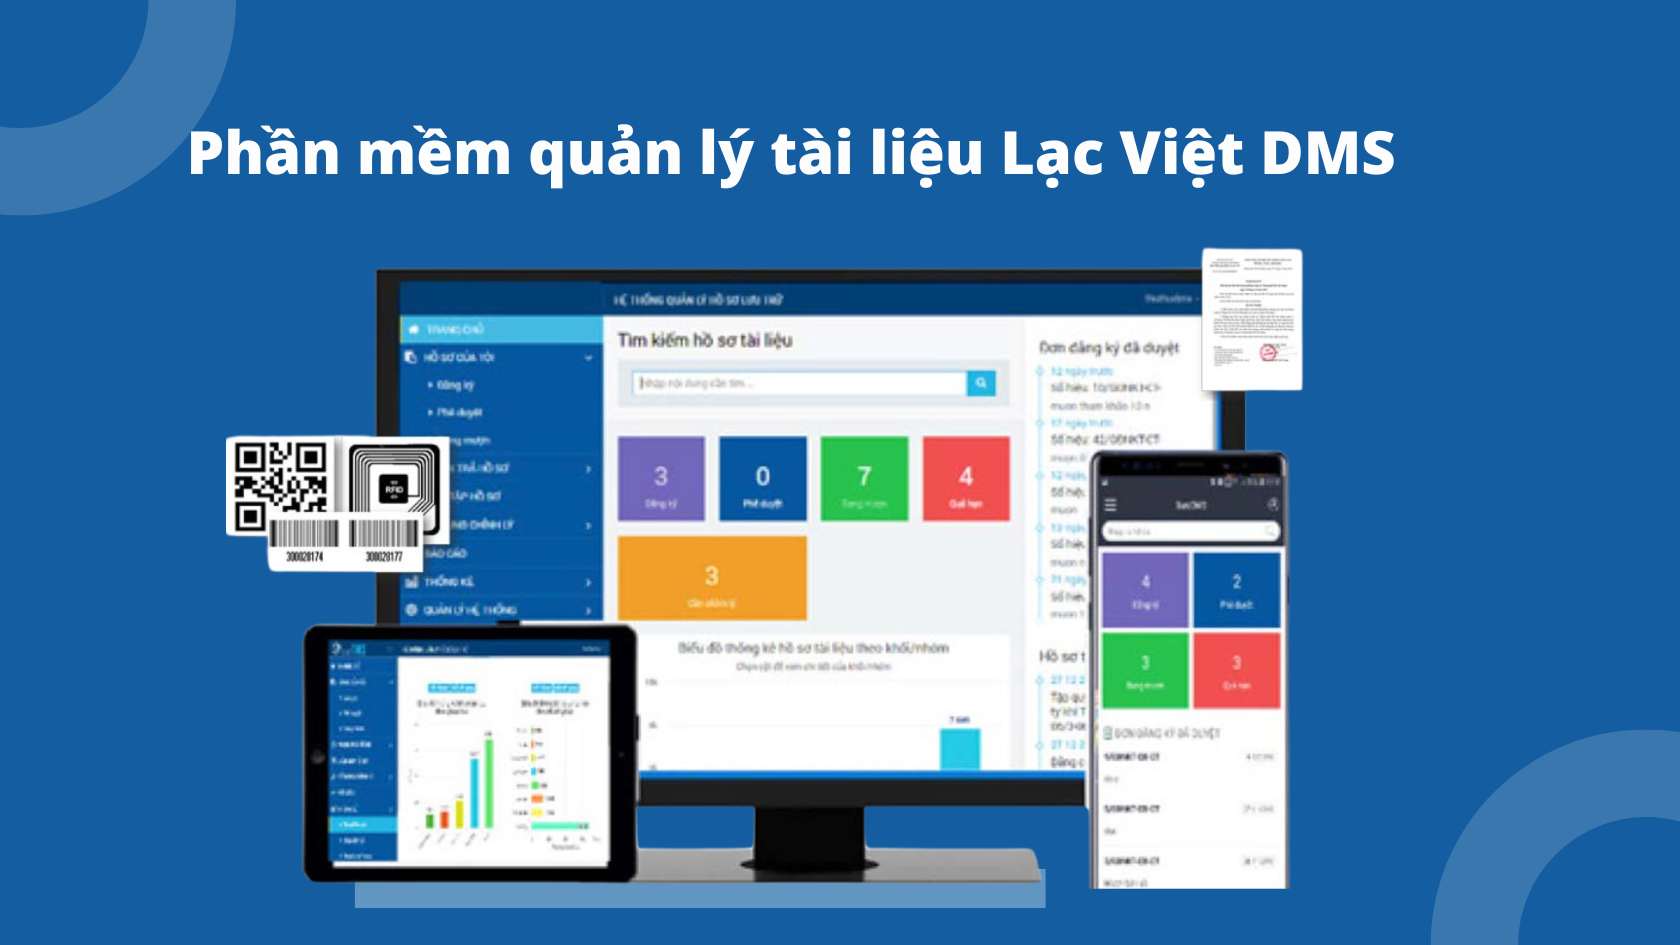 Phần mềm quản lý tài liệu Lạc Việt DMS